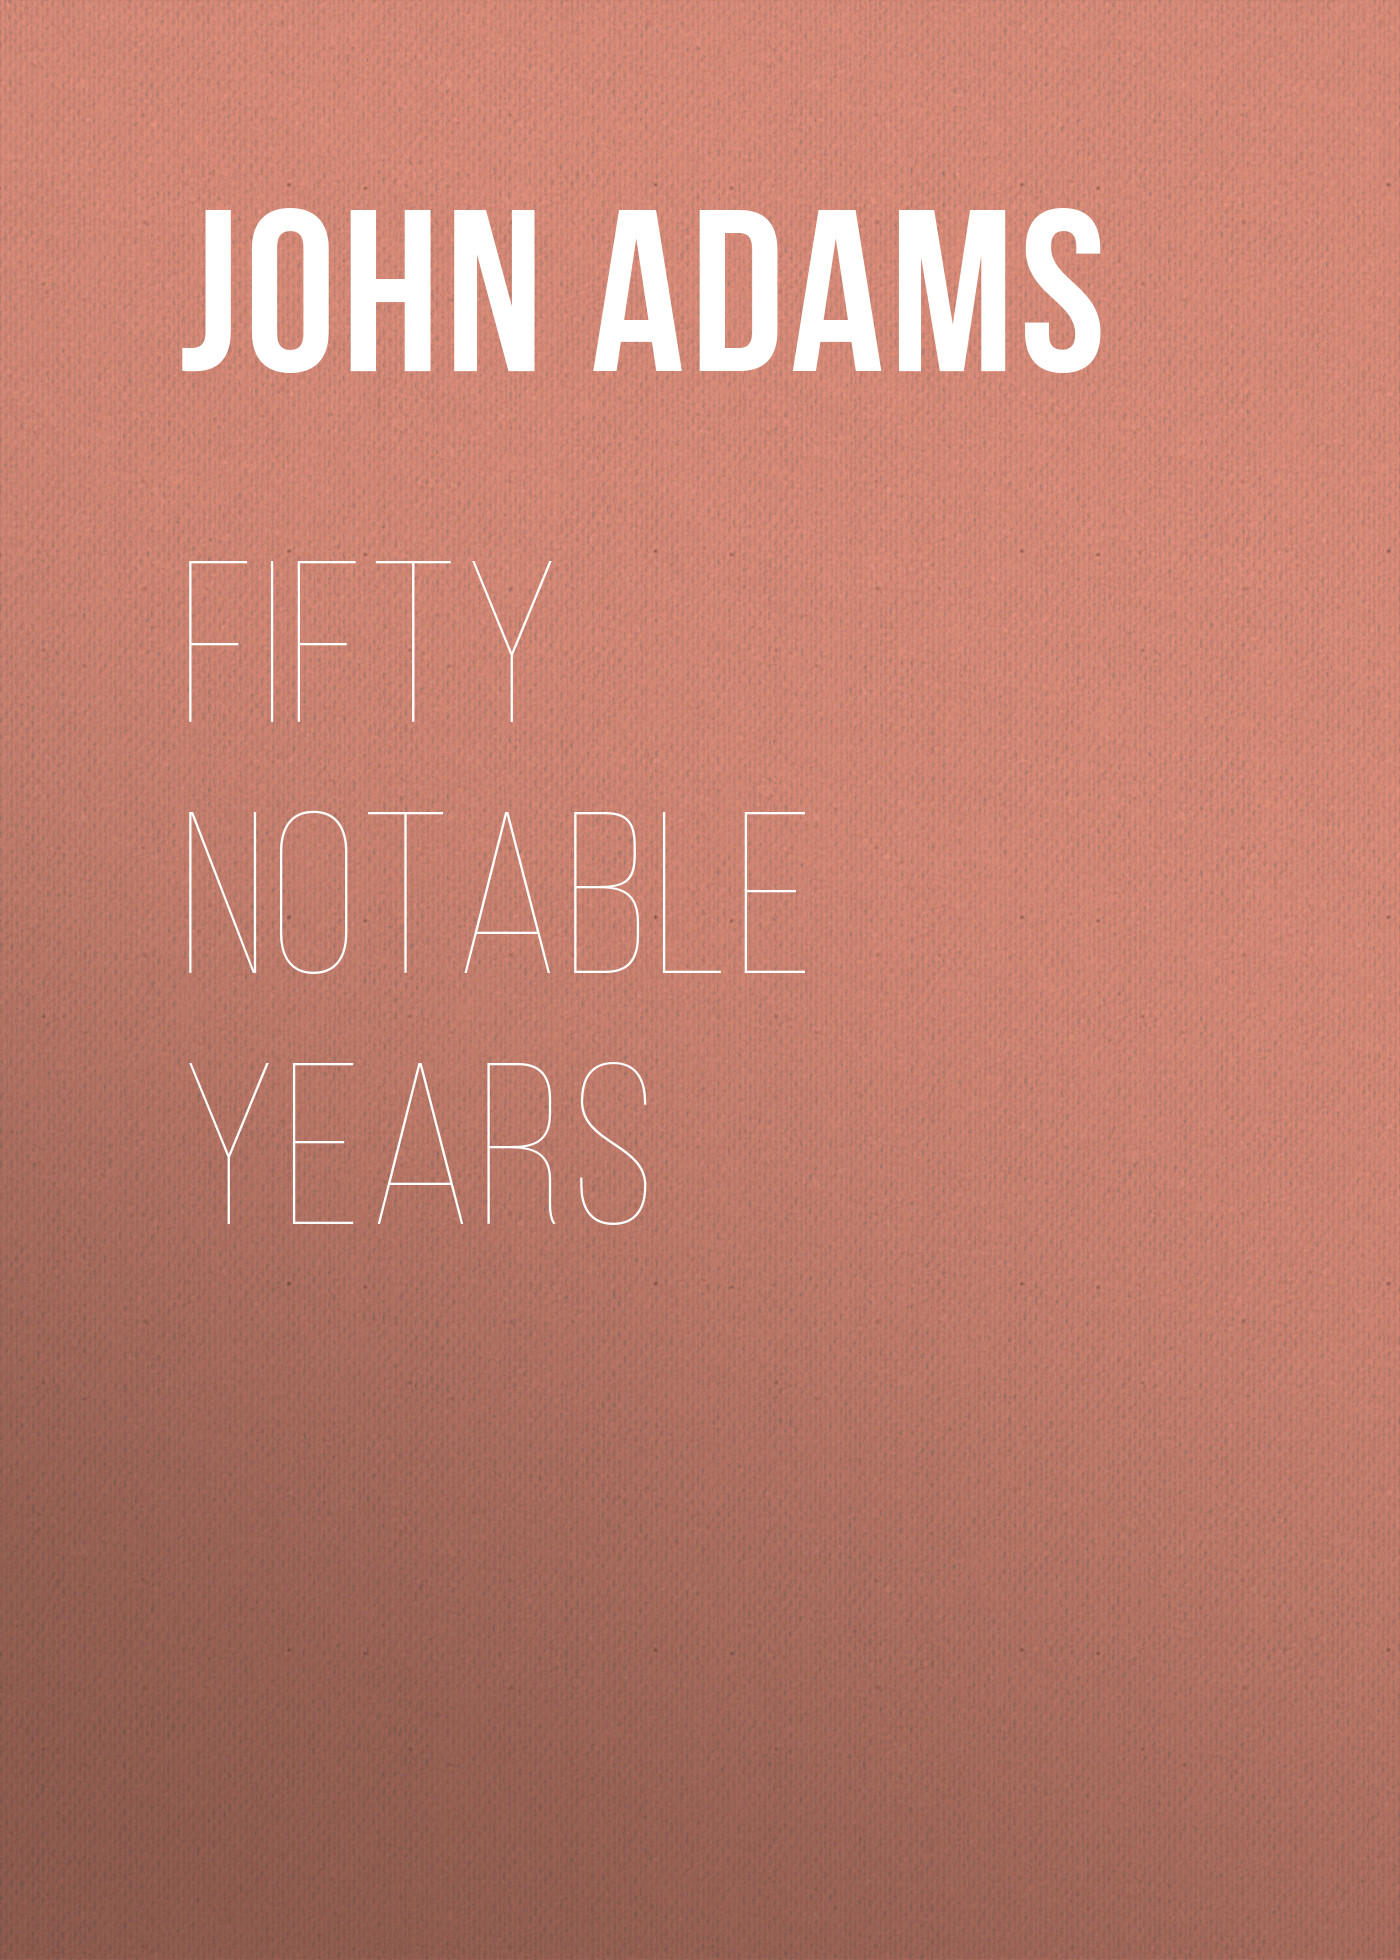 Книга Fifty Notable Years из серии , созданная John Adams, может относится к жанру Зарубежная старинная литература, Зарубежная классика. Стоимость электронной книги Fifty Notable Years с идентификатором 24172164 составляет 0.90 руб.